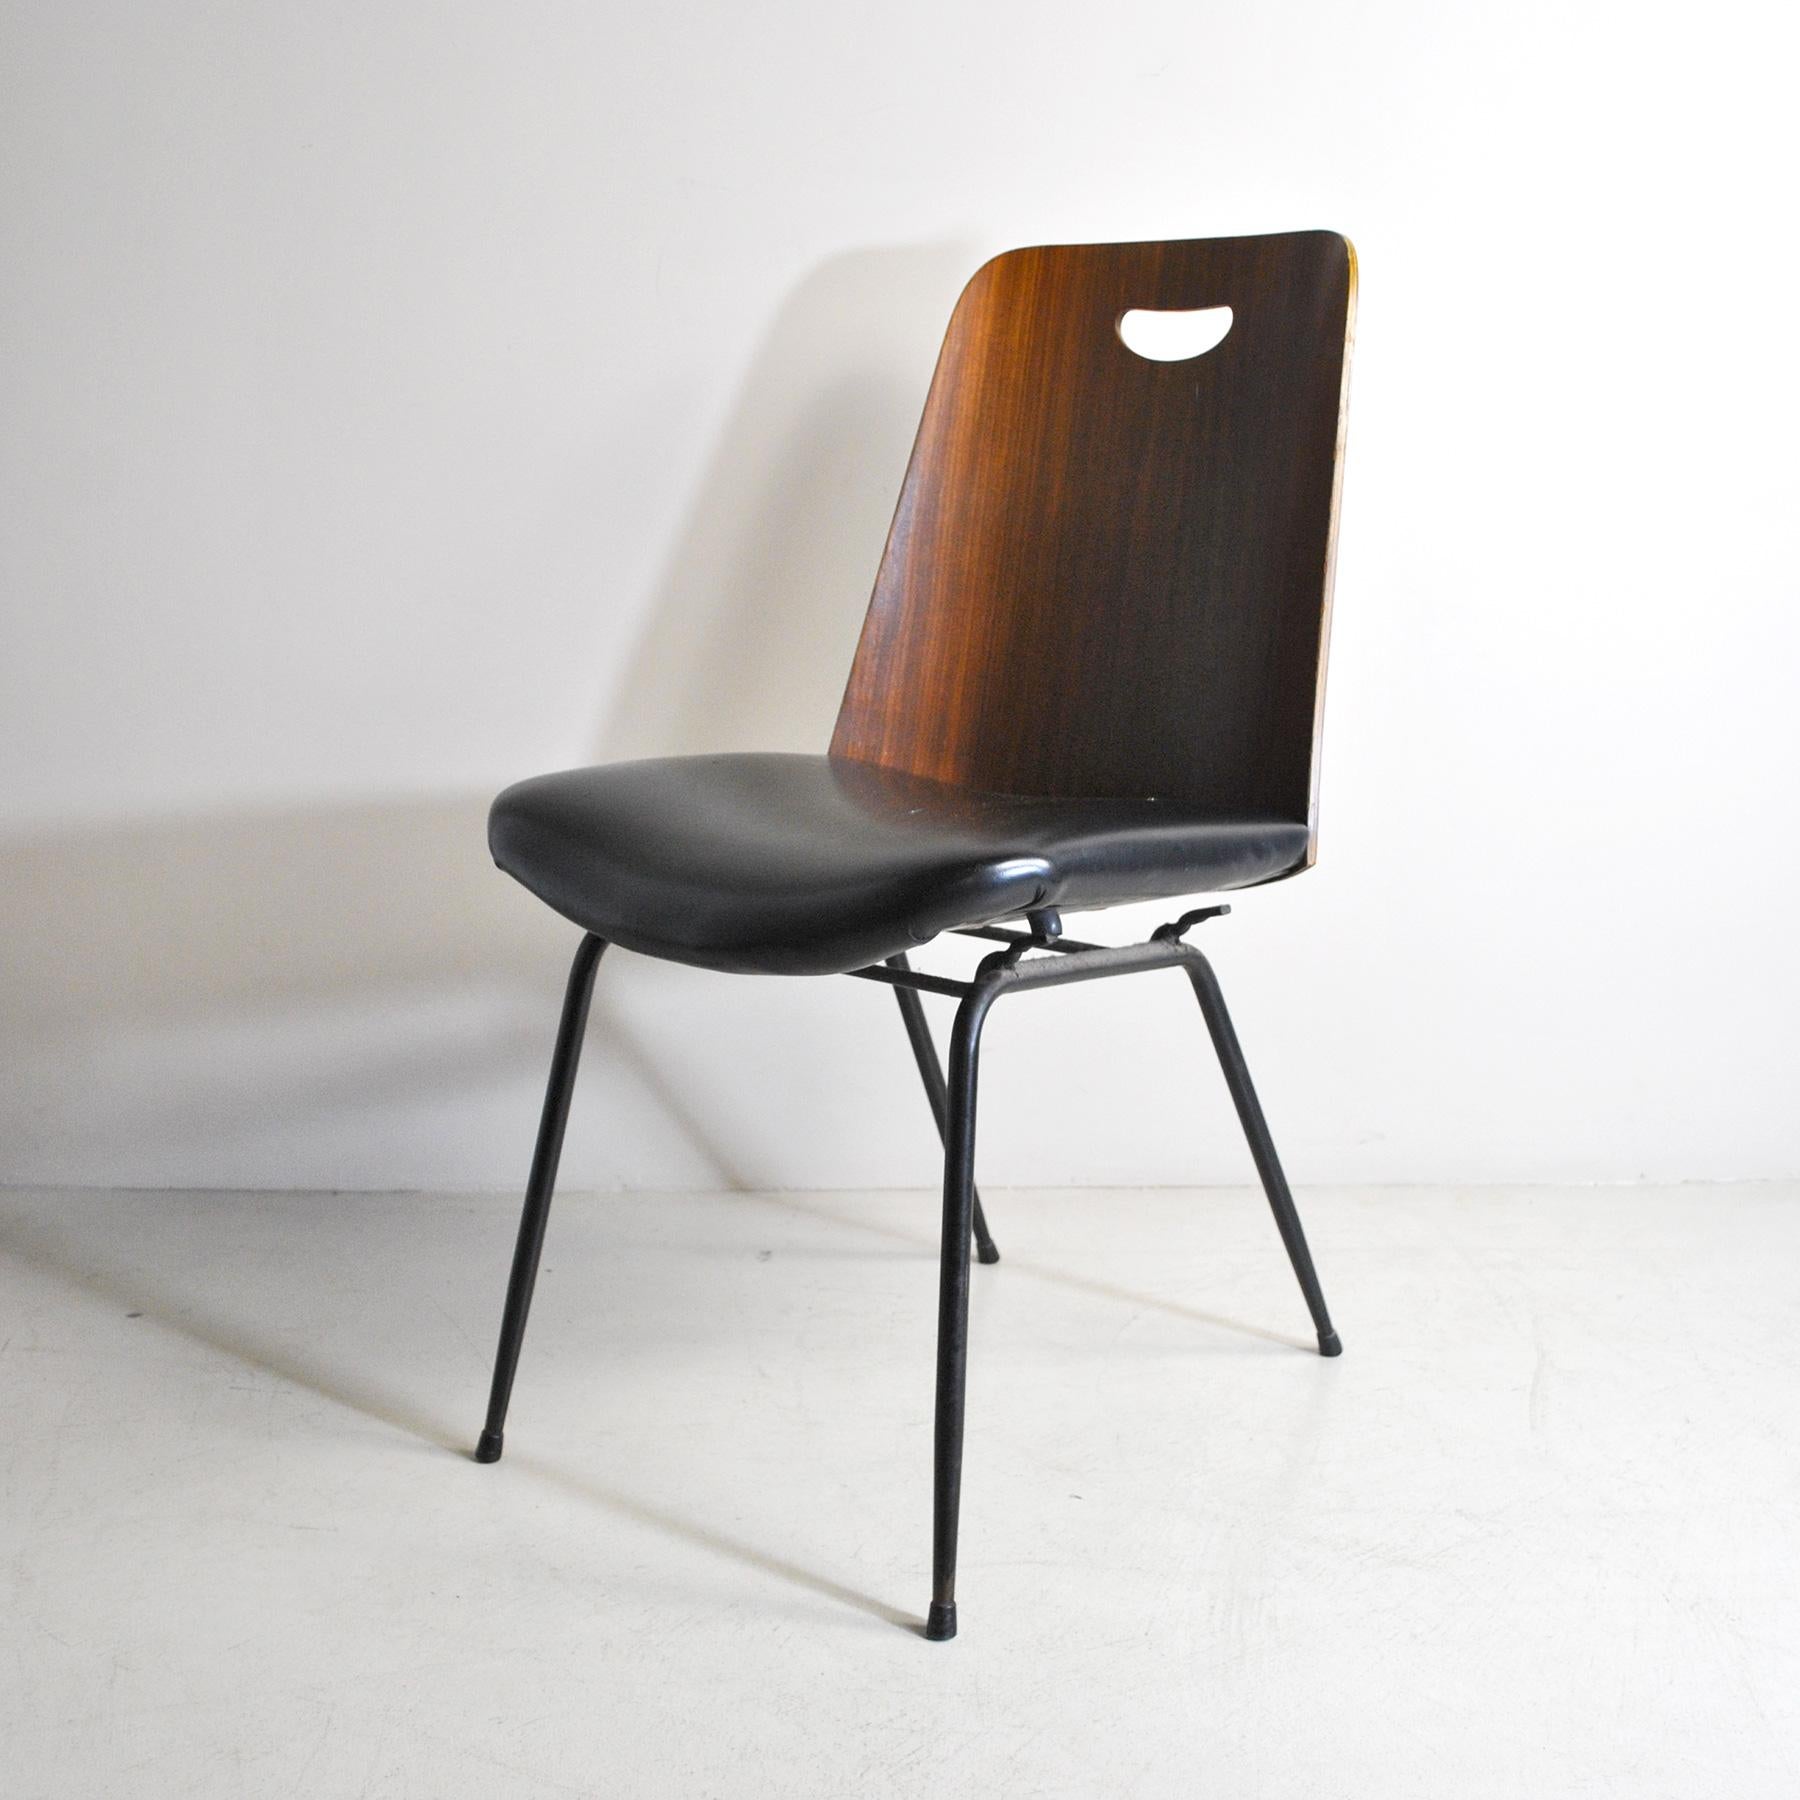 Chaise simple produite par RIMA dans les années 1950, modèle DU 22, conçue par Gastone Rinaldi.